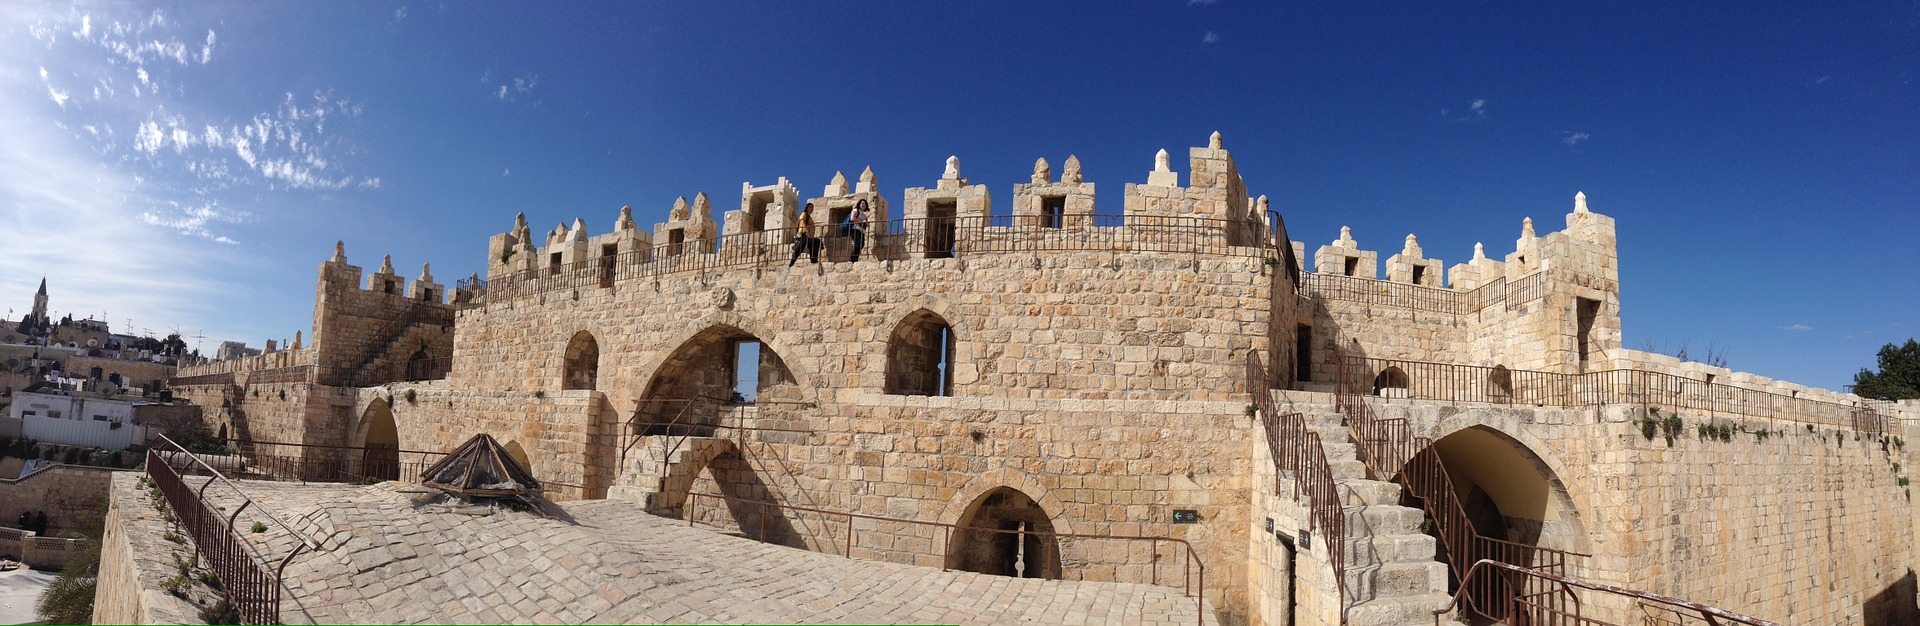 Jerusalem REVIEW|エルサレム お客様の声